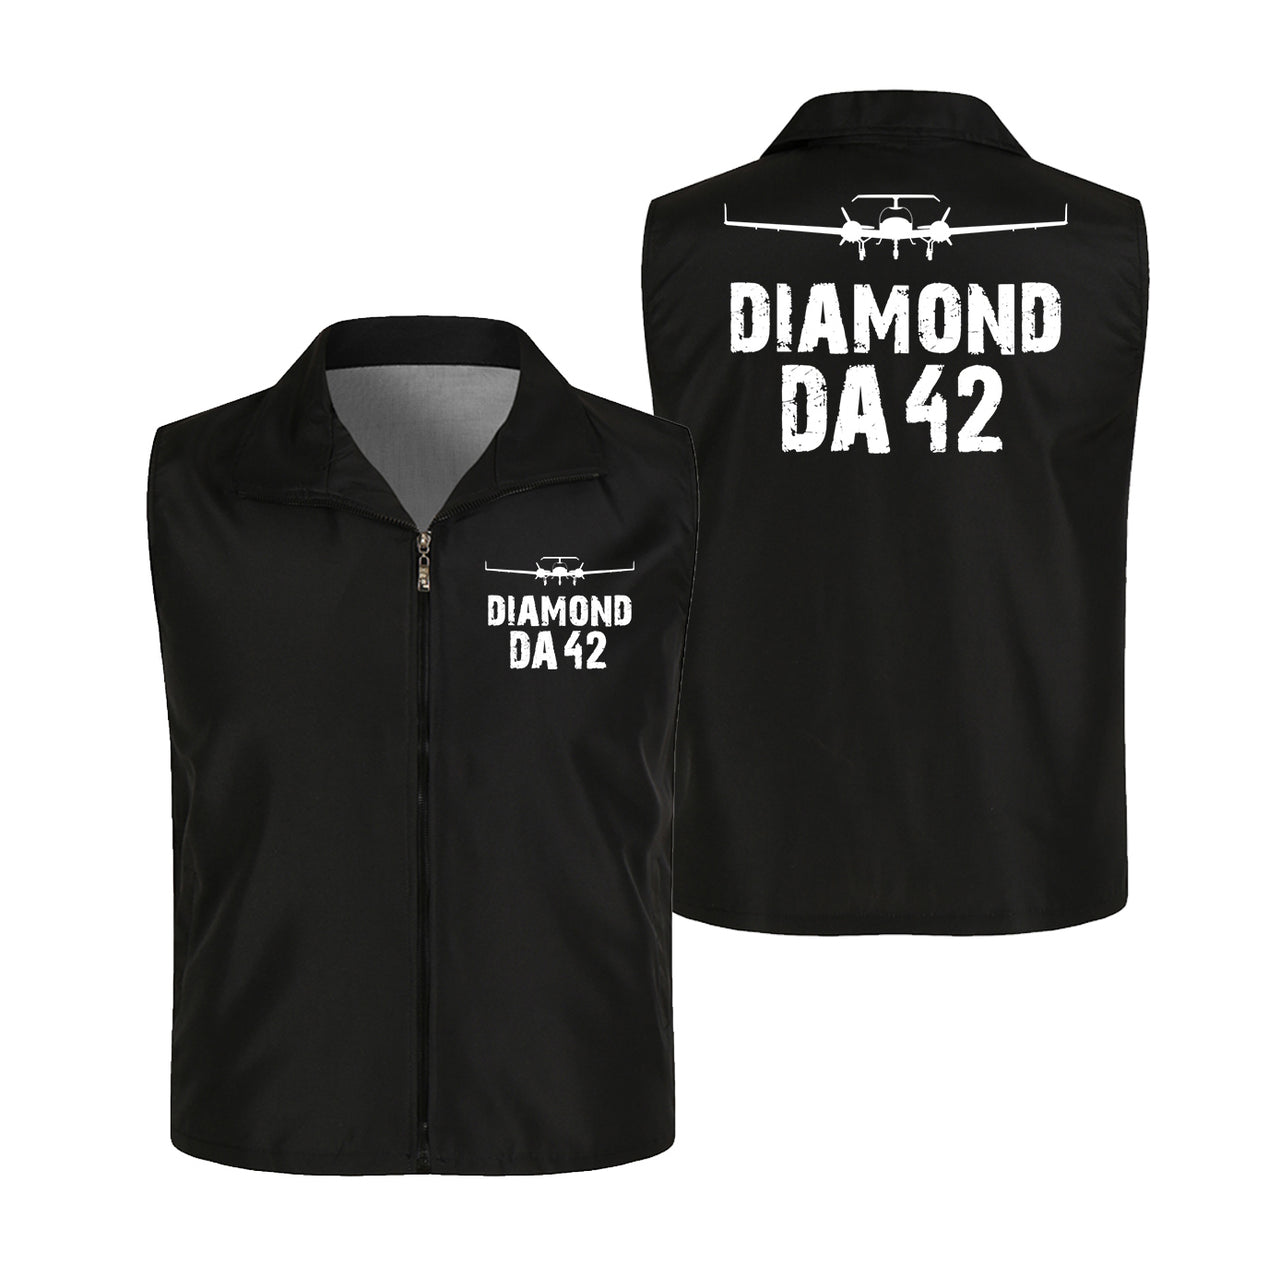 Diamond DA42 & Plane Designed Thin Style Vests